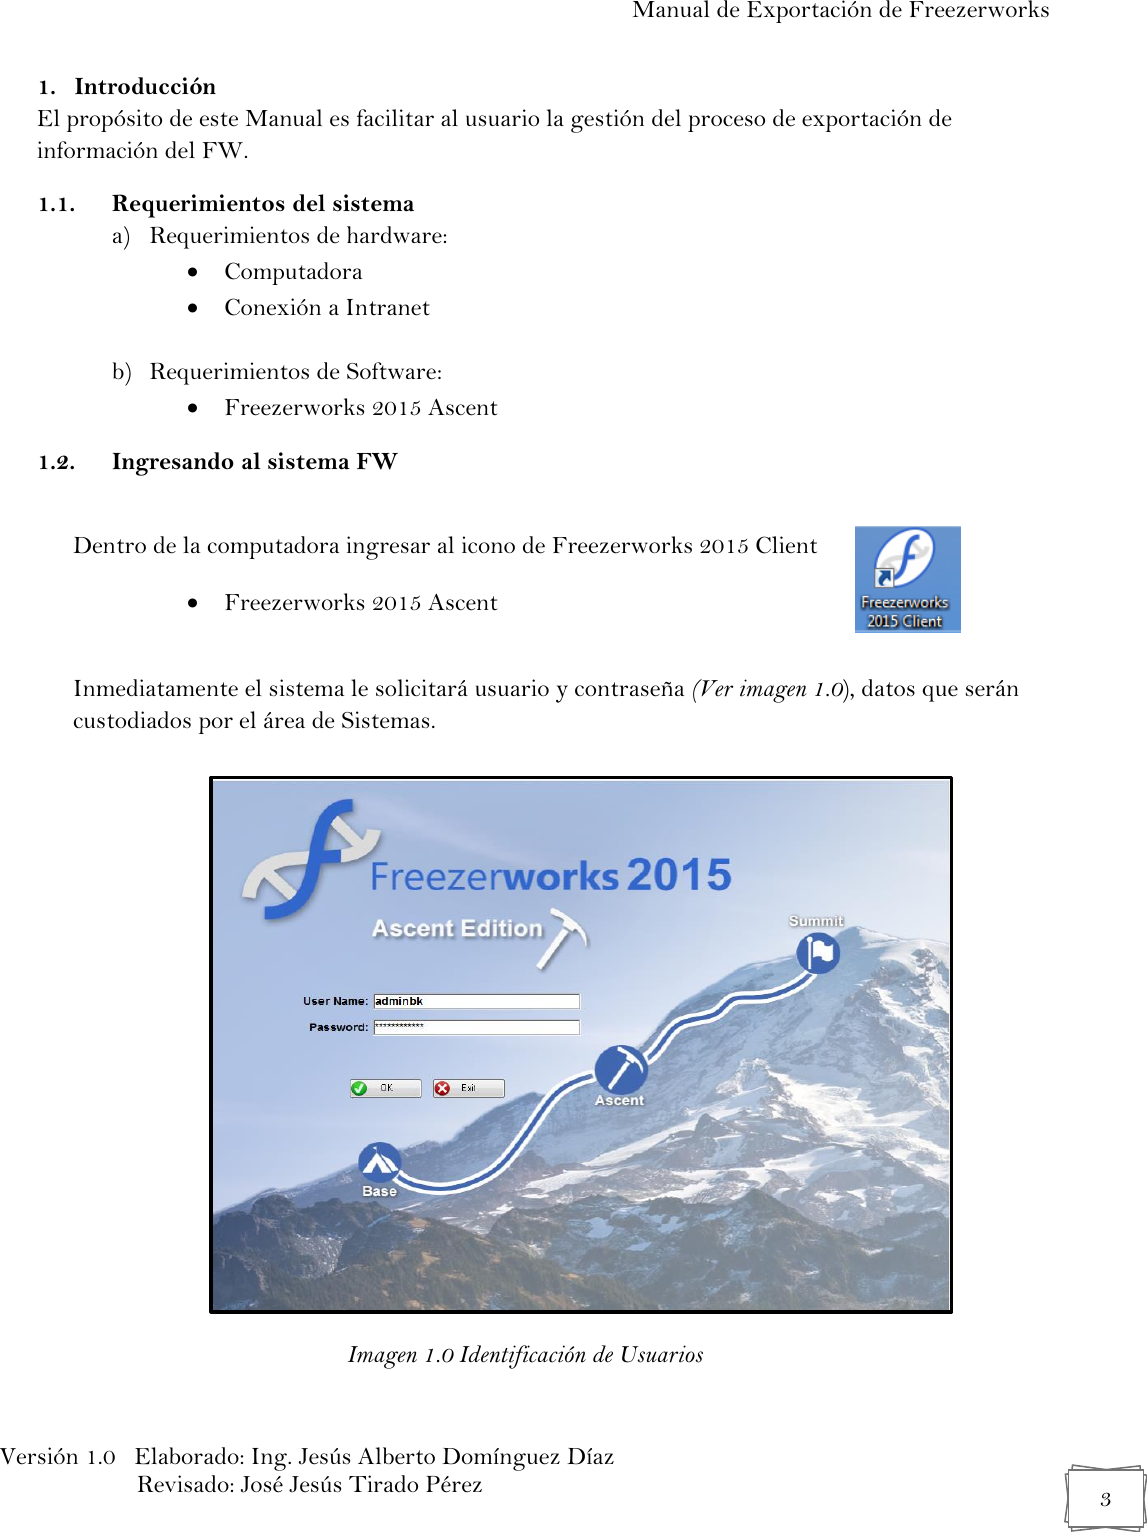 Page 3 of 11 - Manual 03 Exportación De Bases Datos Del Freezerworks